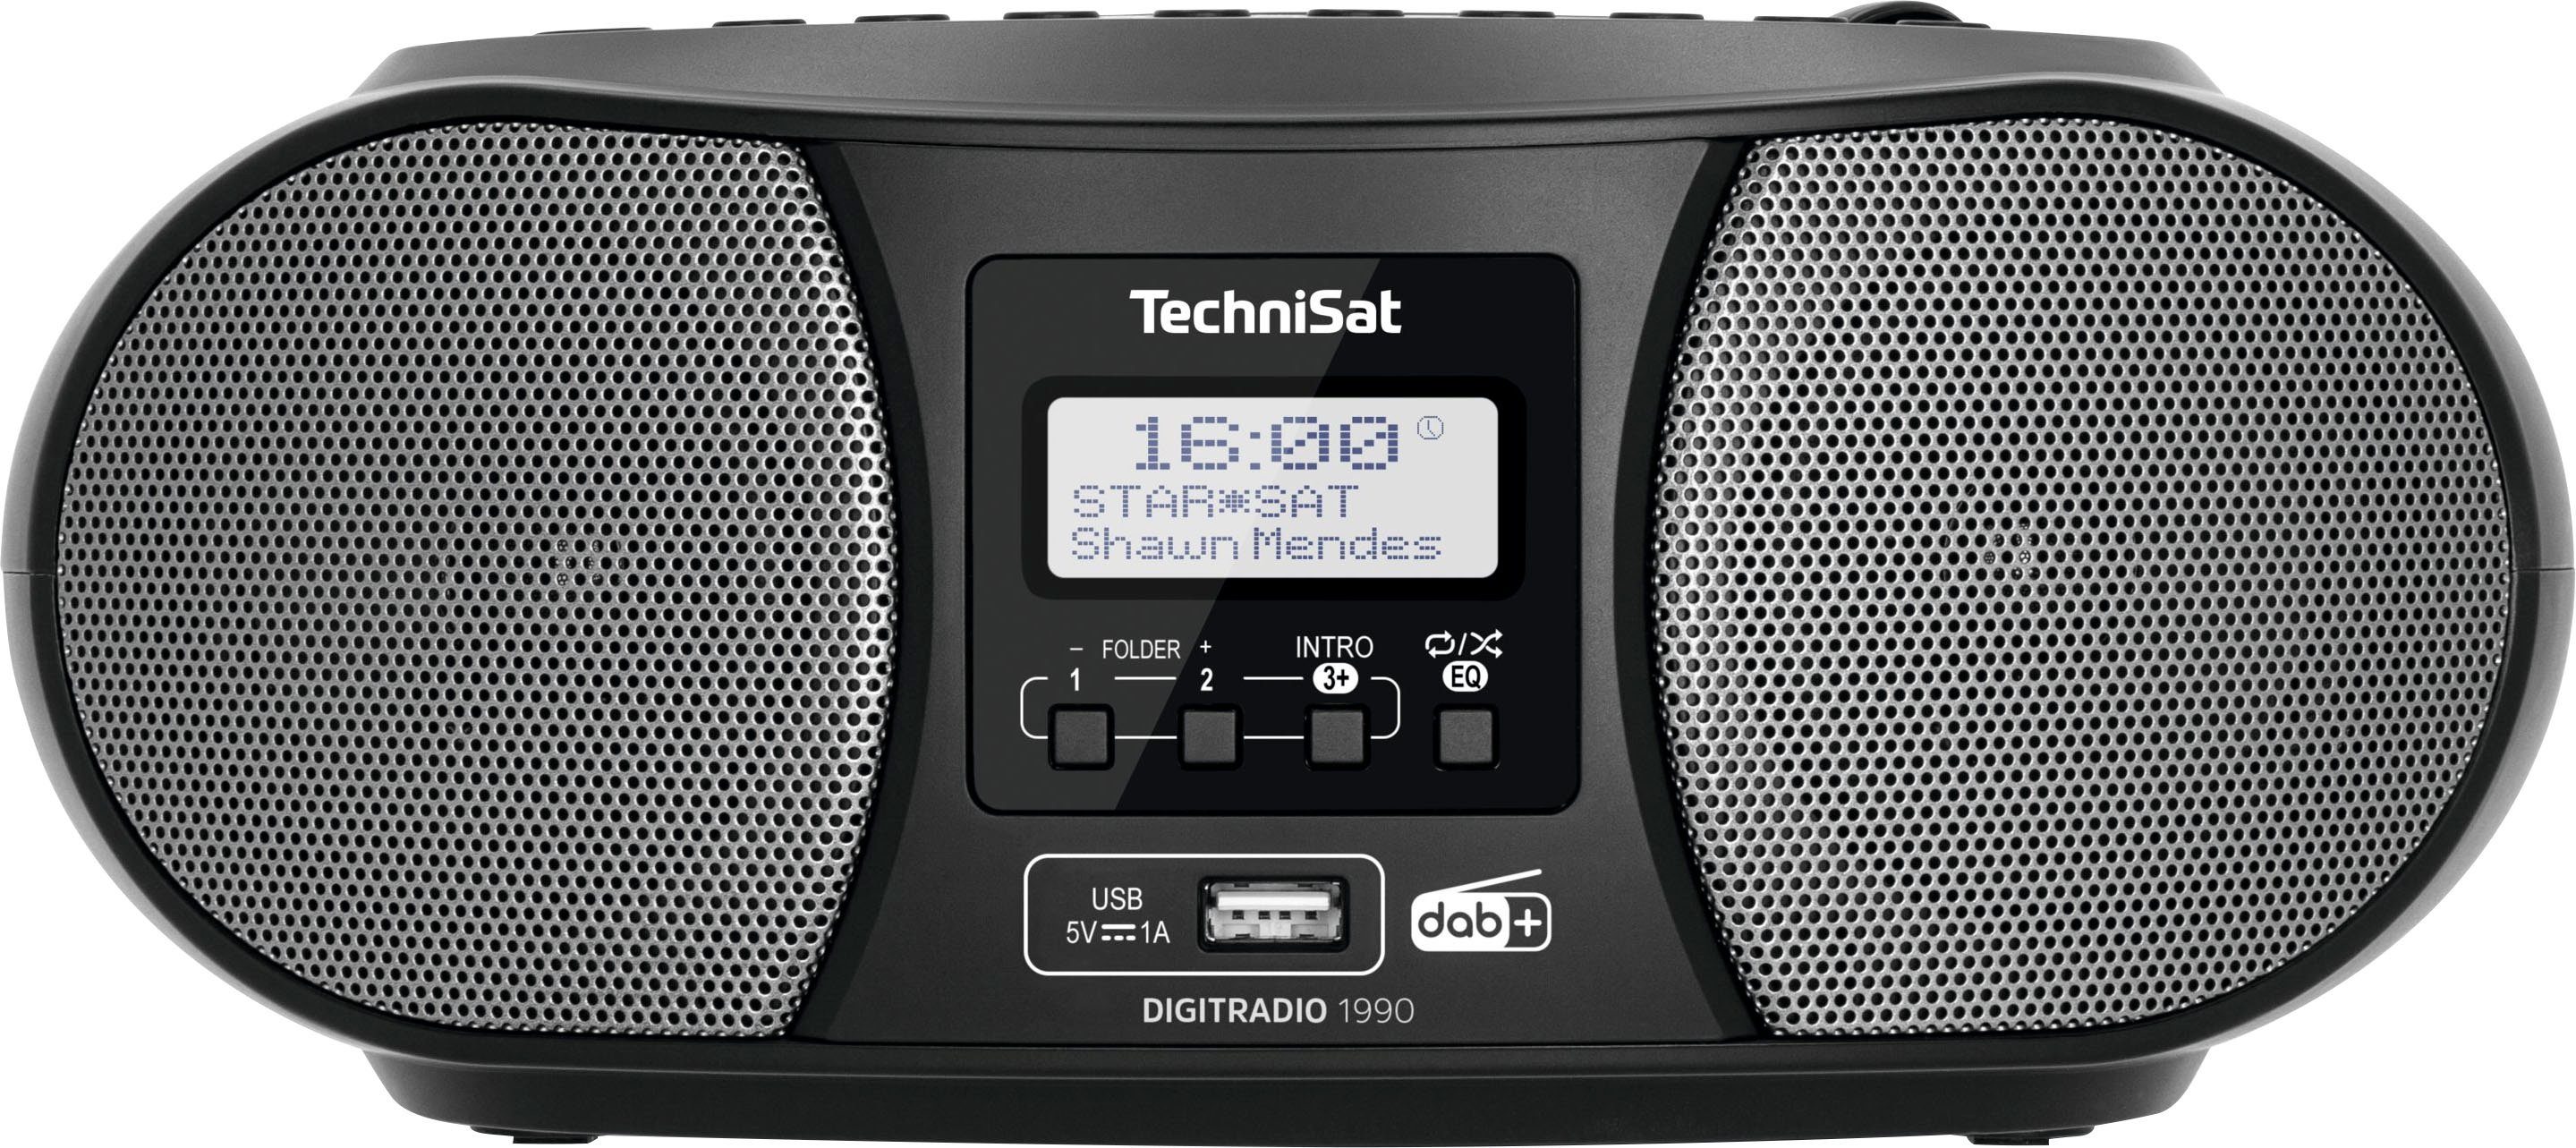 (Digitalradio CD-Player, mit Bluetooth, FM-Tuner, TechniSat UKW, Digitradio Stereo- DAB+, Boombox (DAB), USB, 1990 Batteriebetrieb schwarz möglich)